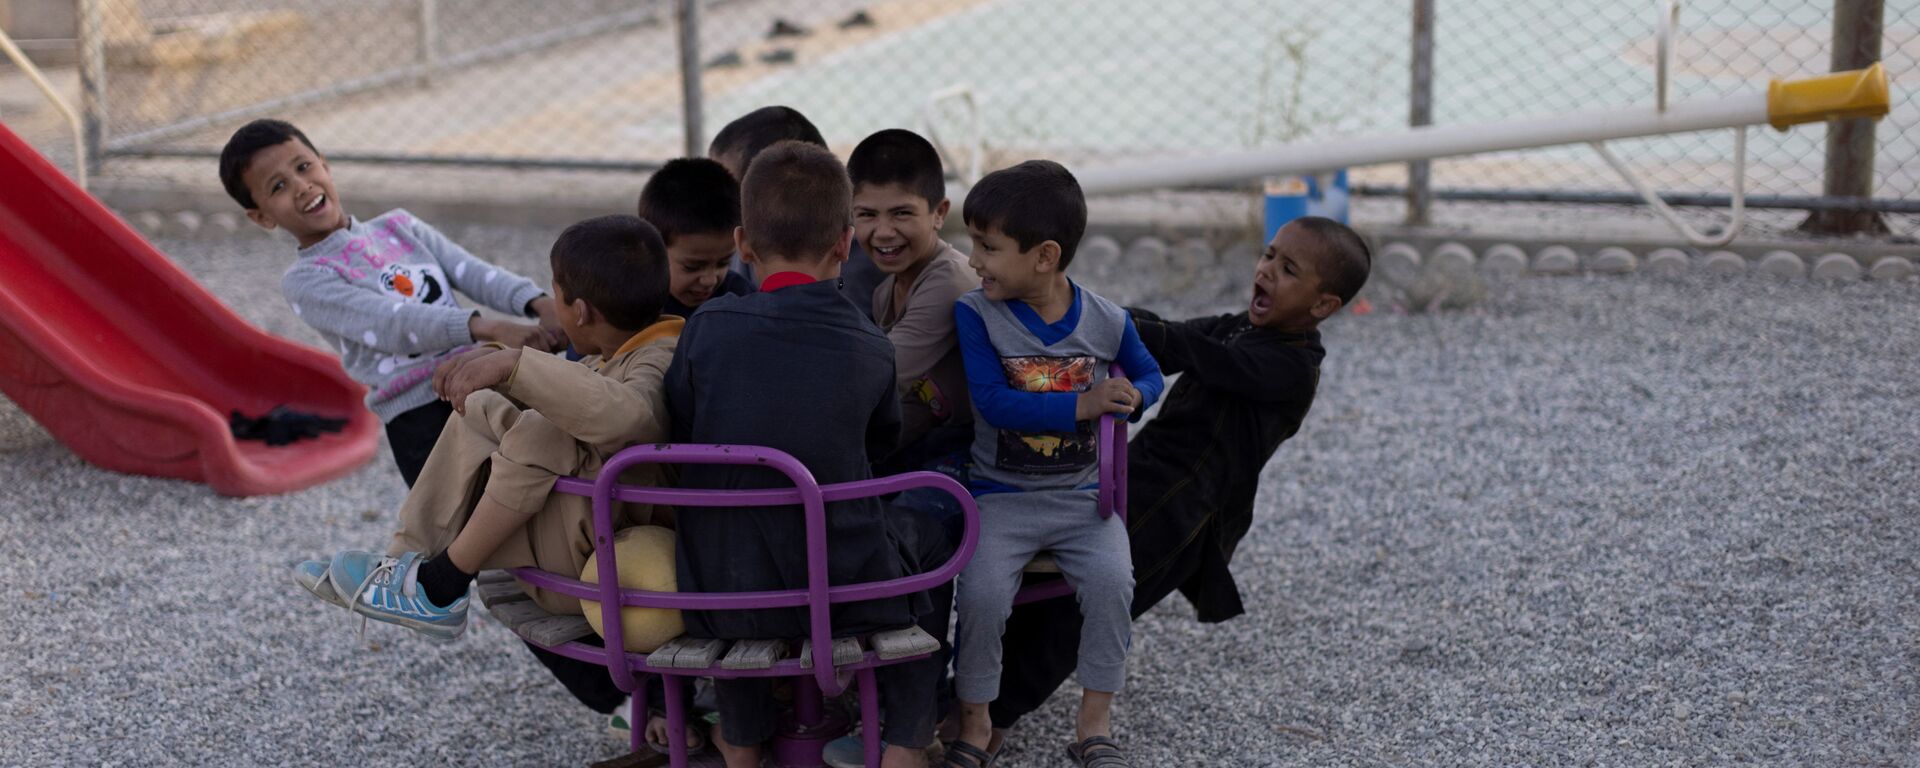 Дети из приюта играют во дворе после школьных занятий, Кабул - Sputnik Тоҷикистон, 1920, 21.12.2021